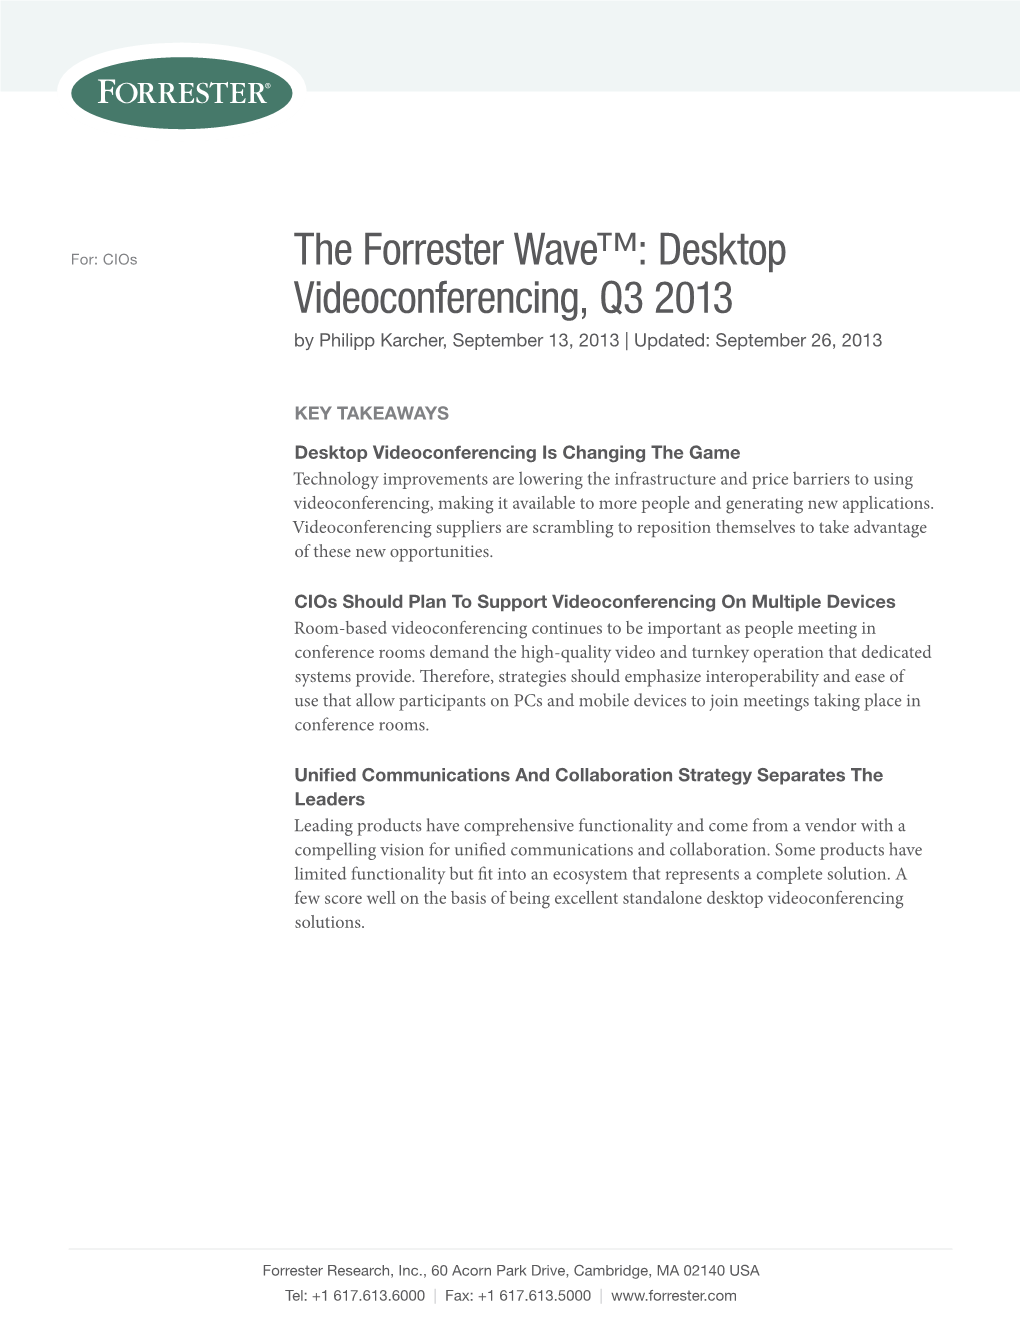 The Forrester Wave™: Desktop Videoconferencing, Q3 2013 by Philipp Karcher, September 13, 2013 | Updated: September 26, 2013